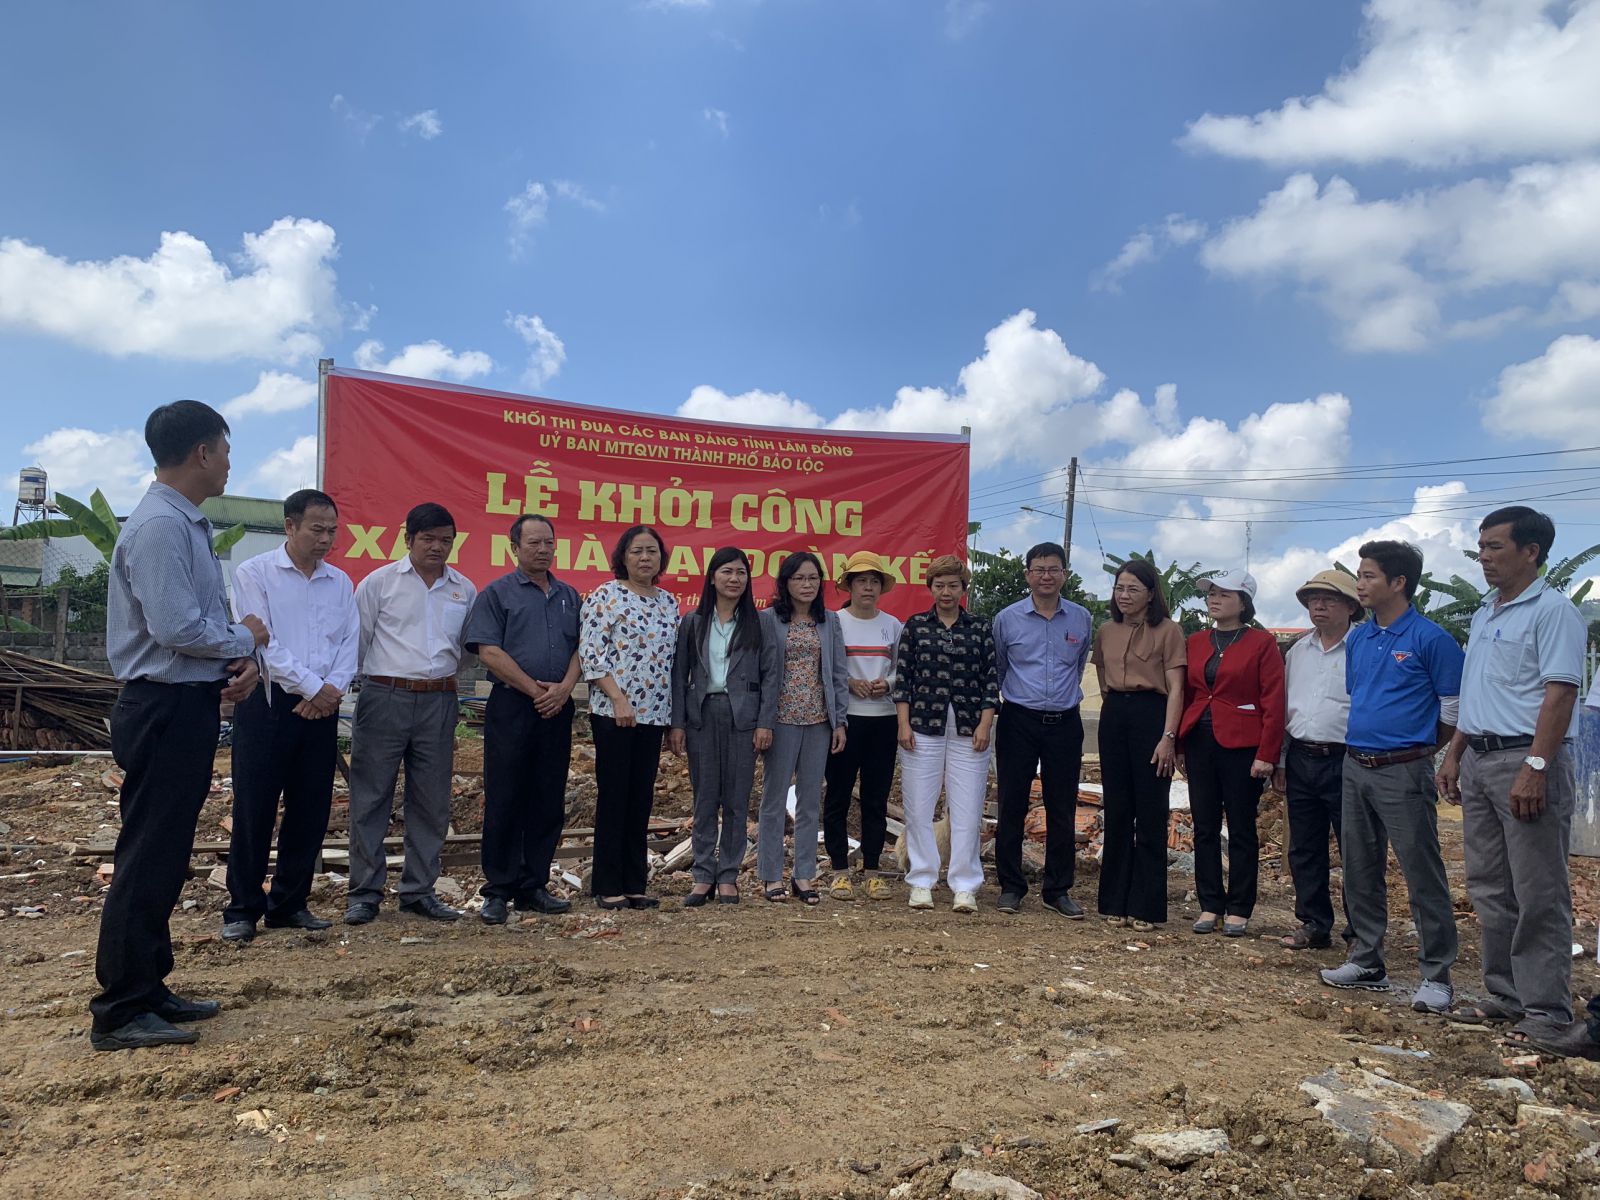 Bảo Lộc, Lâm Đồng: Khởi công xây dựng nhà Đại đoàn kết cho hộ nghèo tại xã Đại Lào